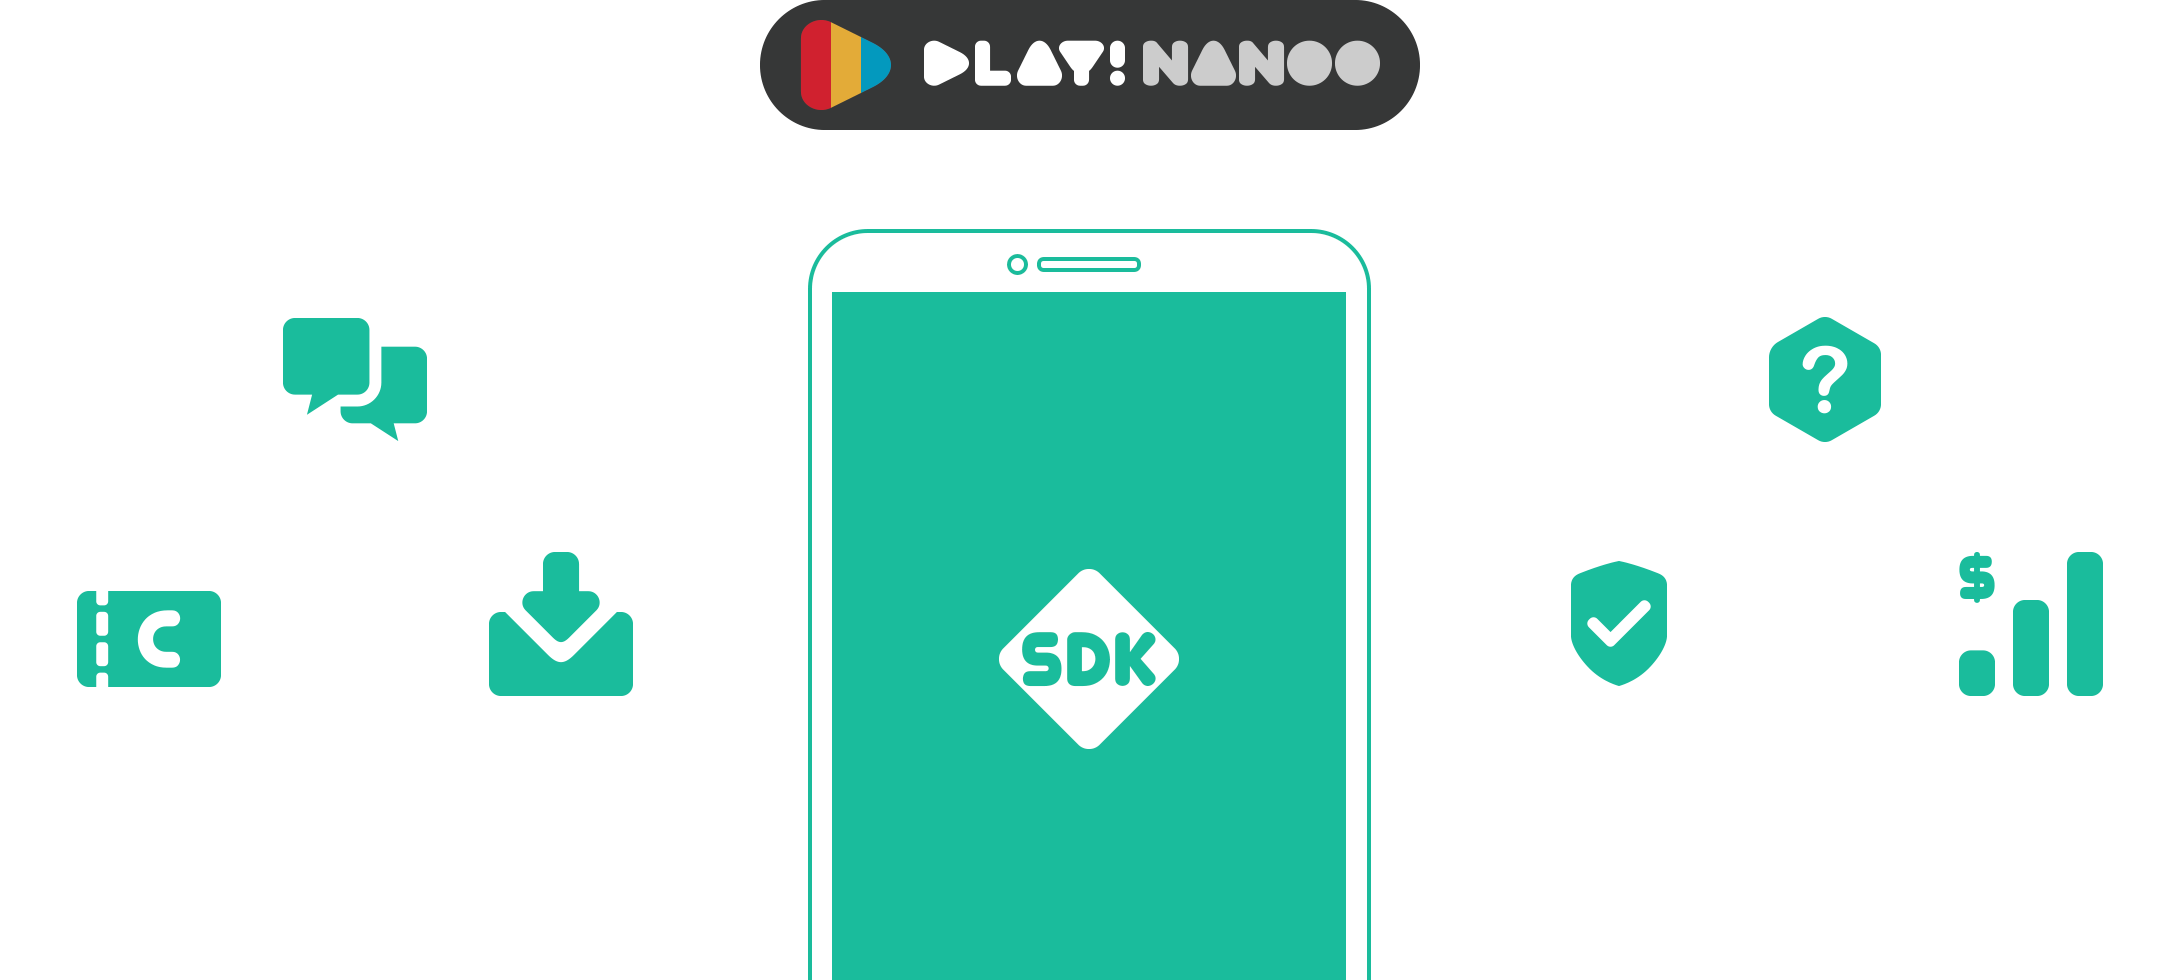 Play! NANOO SDK